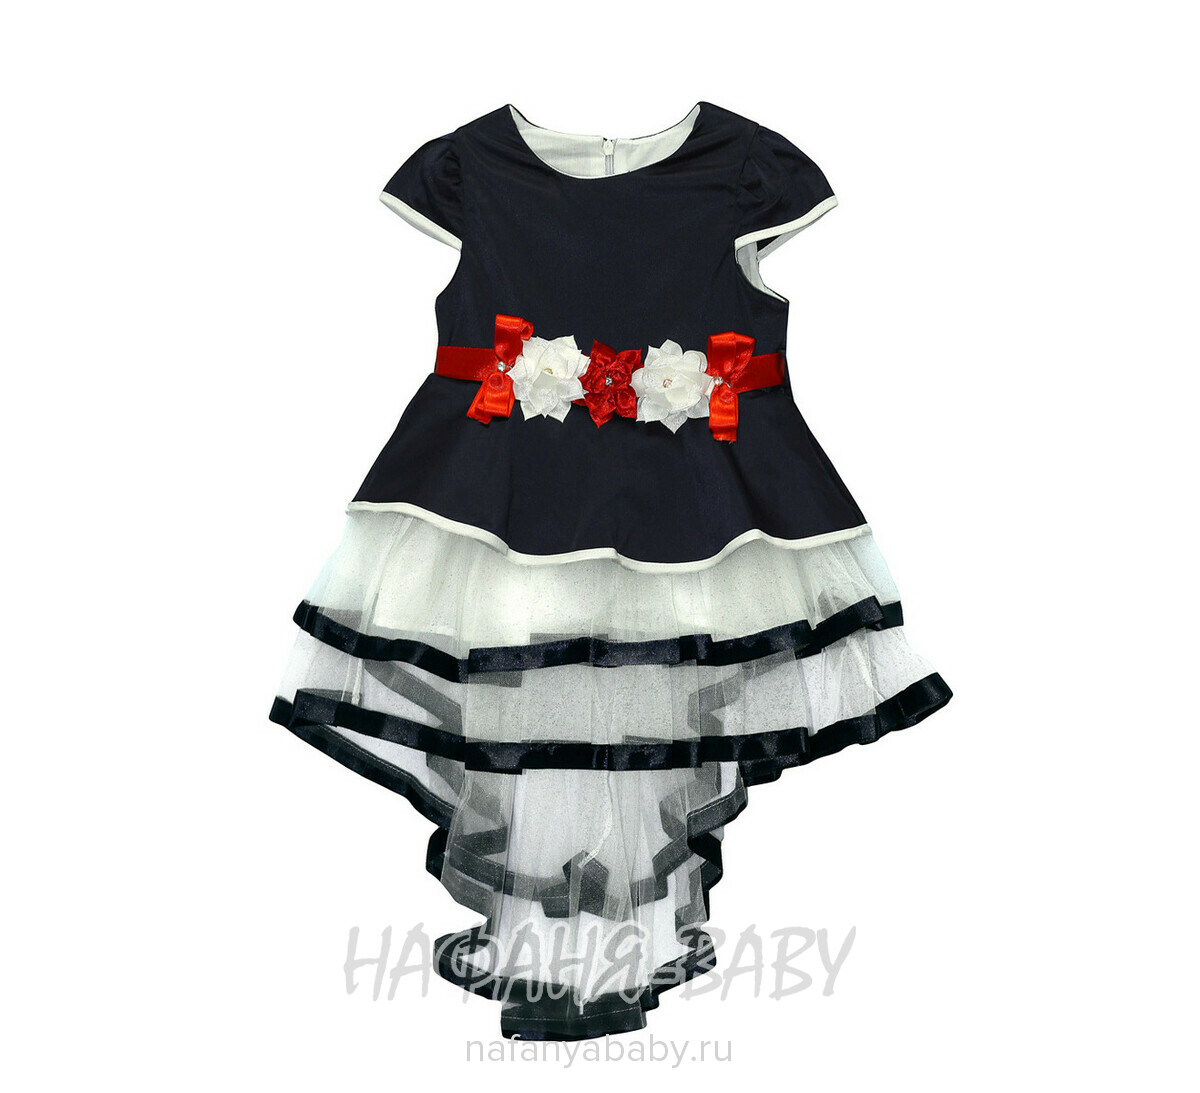 Детское нарядное платье Miss GOLDEN, купить в интернет магазине Нафаня. арт: 246.